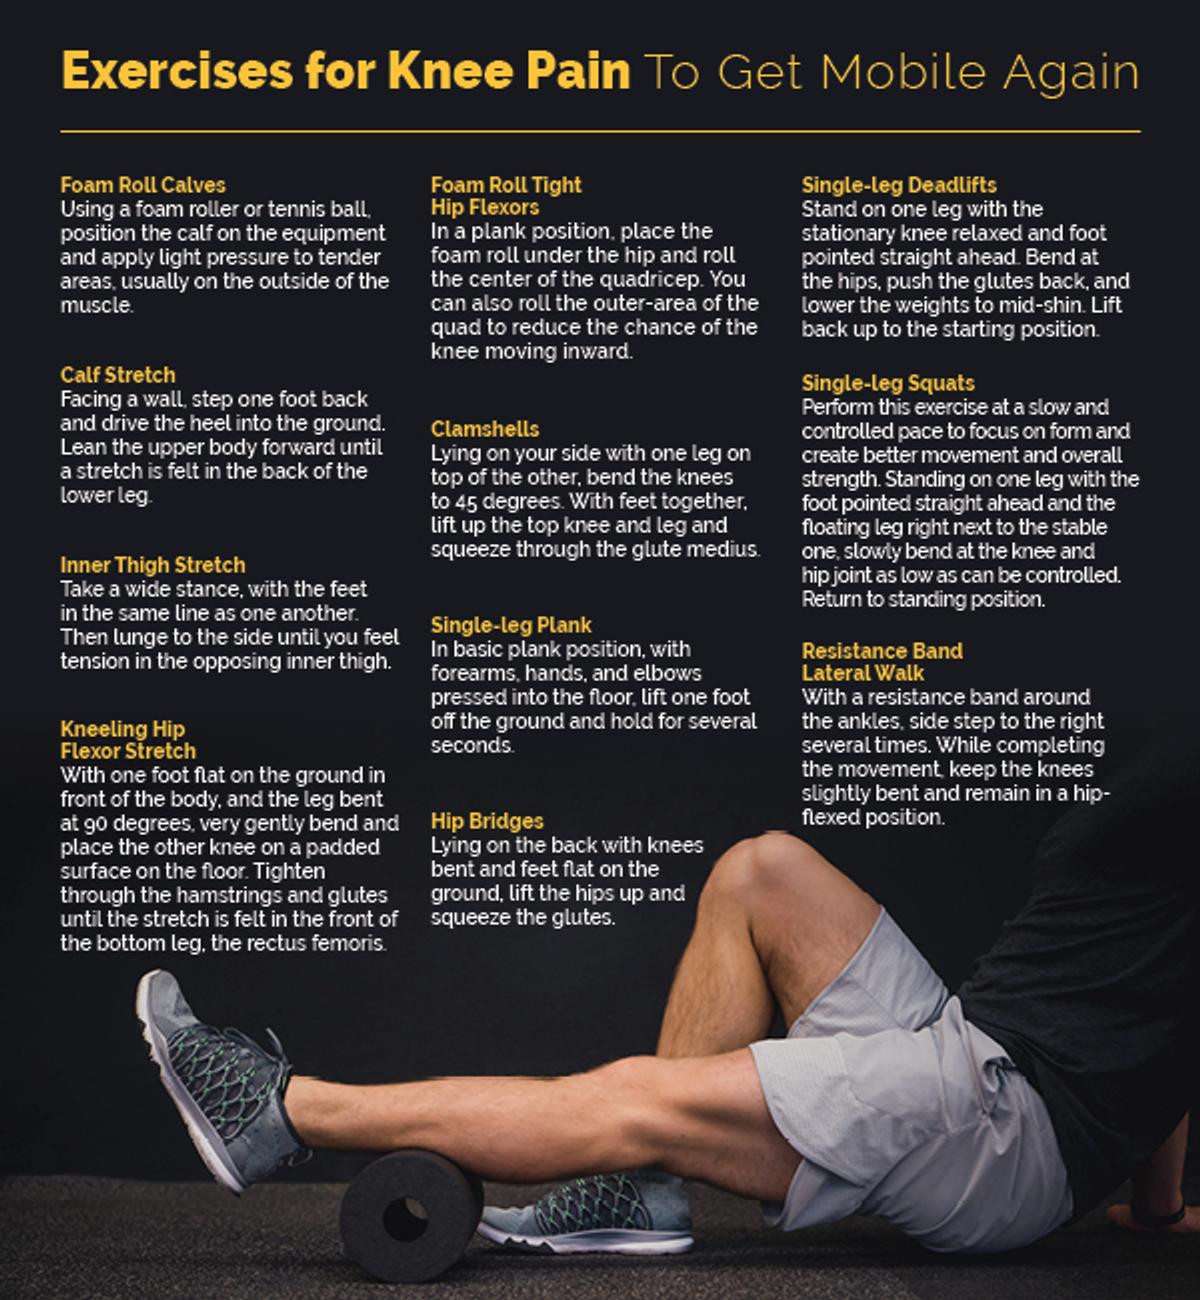 Exercises for Knee Pain Client Handout